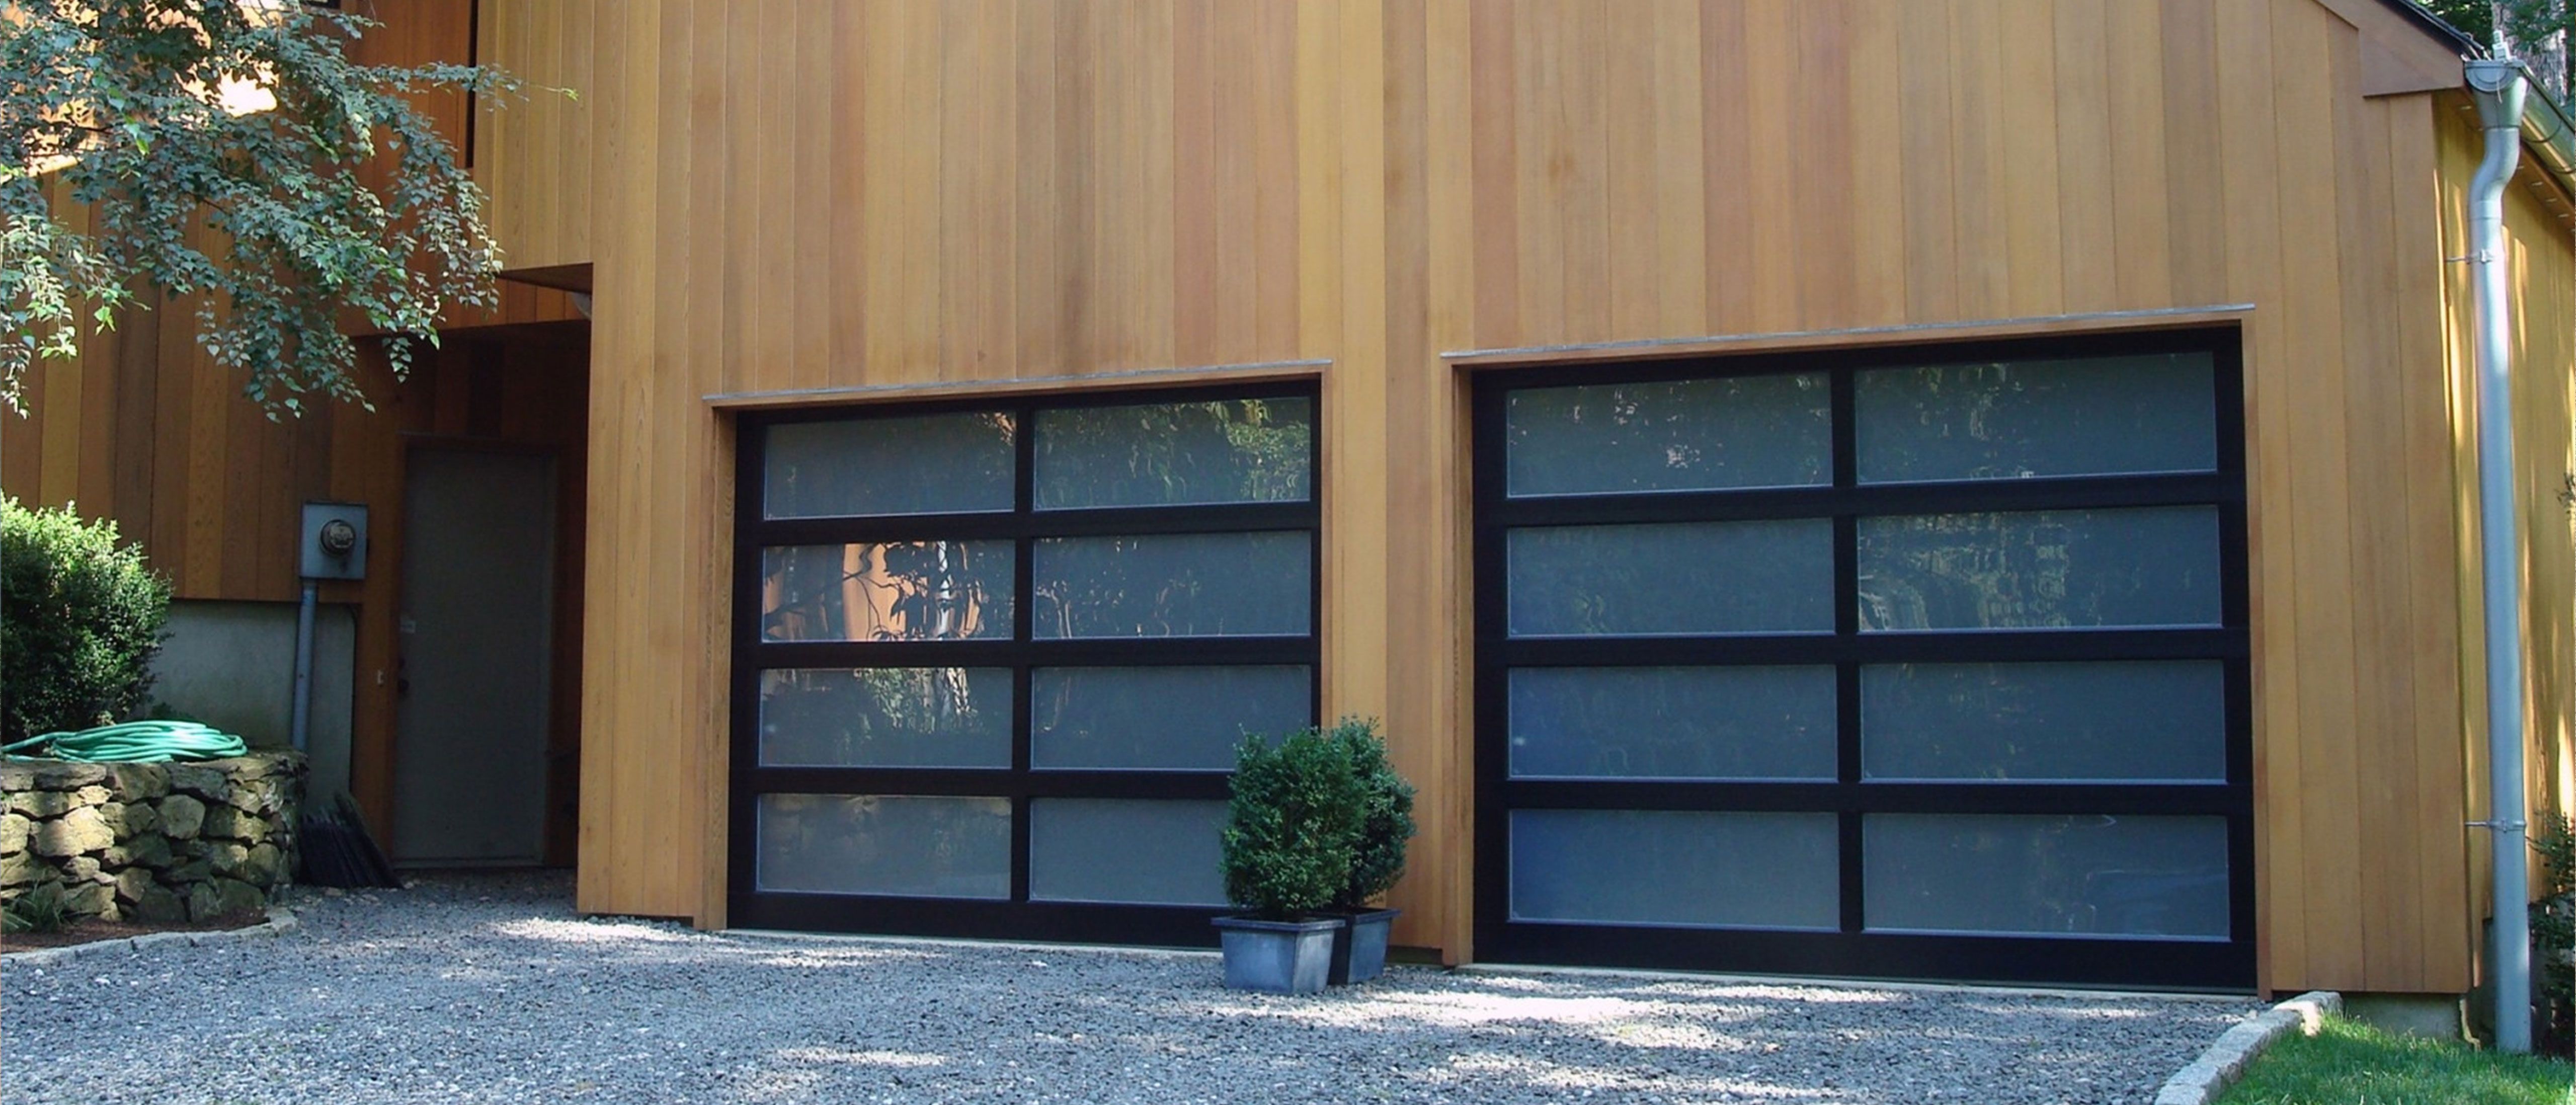 Porte Garage a Broni Passive House Installazione Preventivo Costo Casa Villa Villetta residenziali  industriali aziendali Porte tipo serrande  